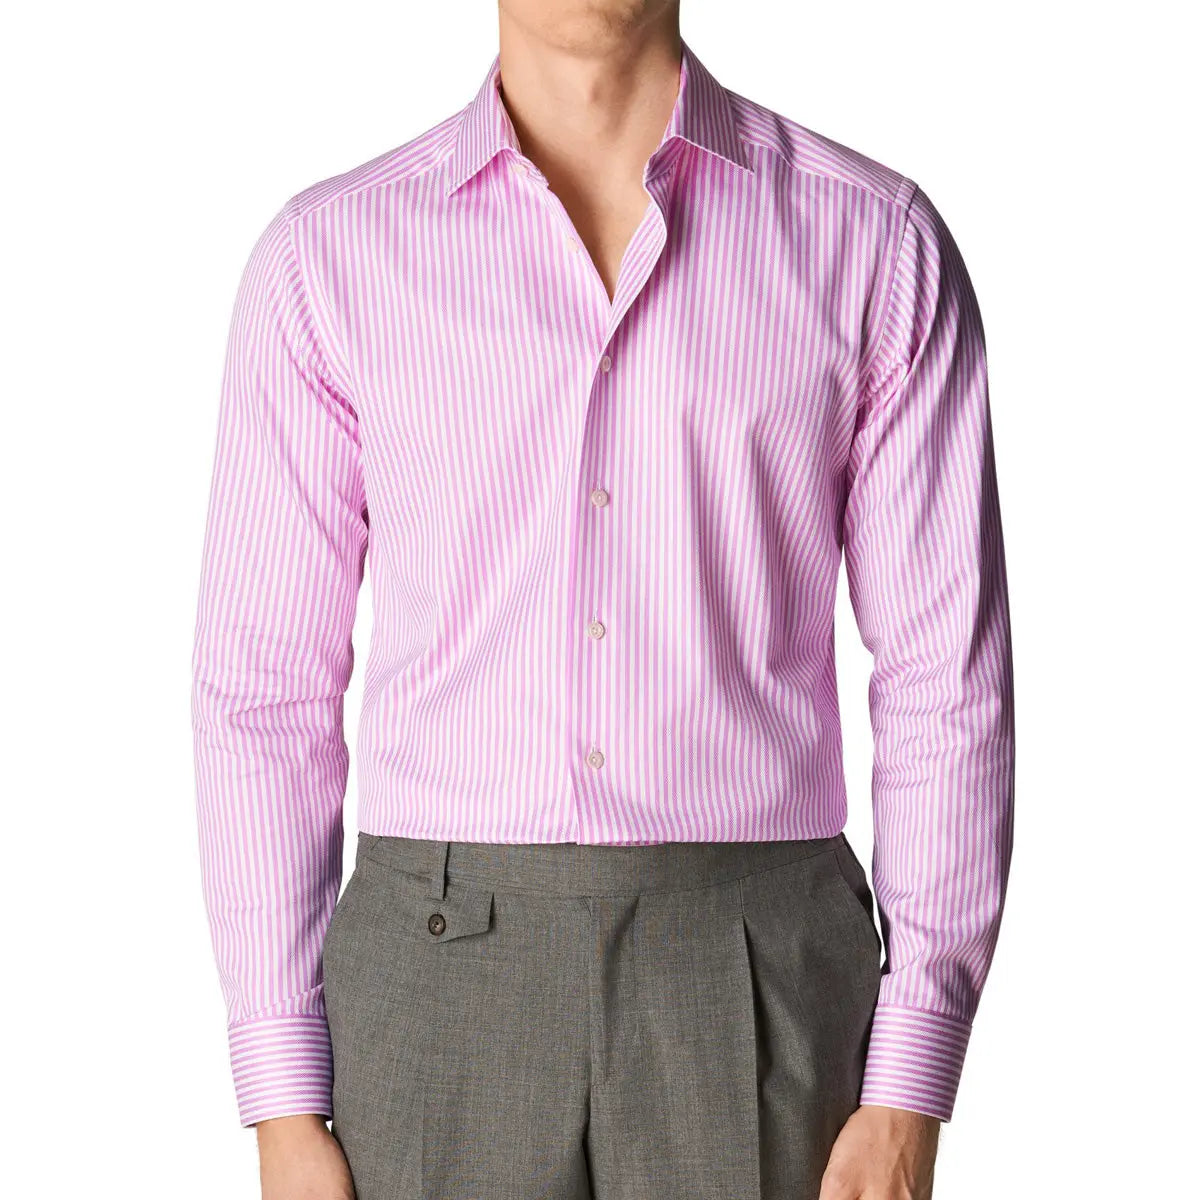 Pink Bengal Stripe Contemporary Fit Shirt  Eton   